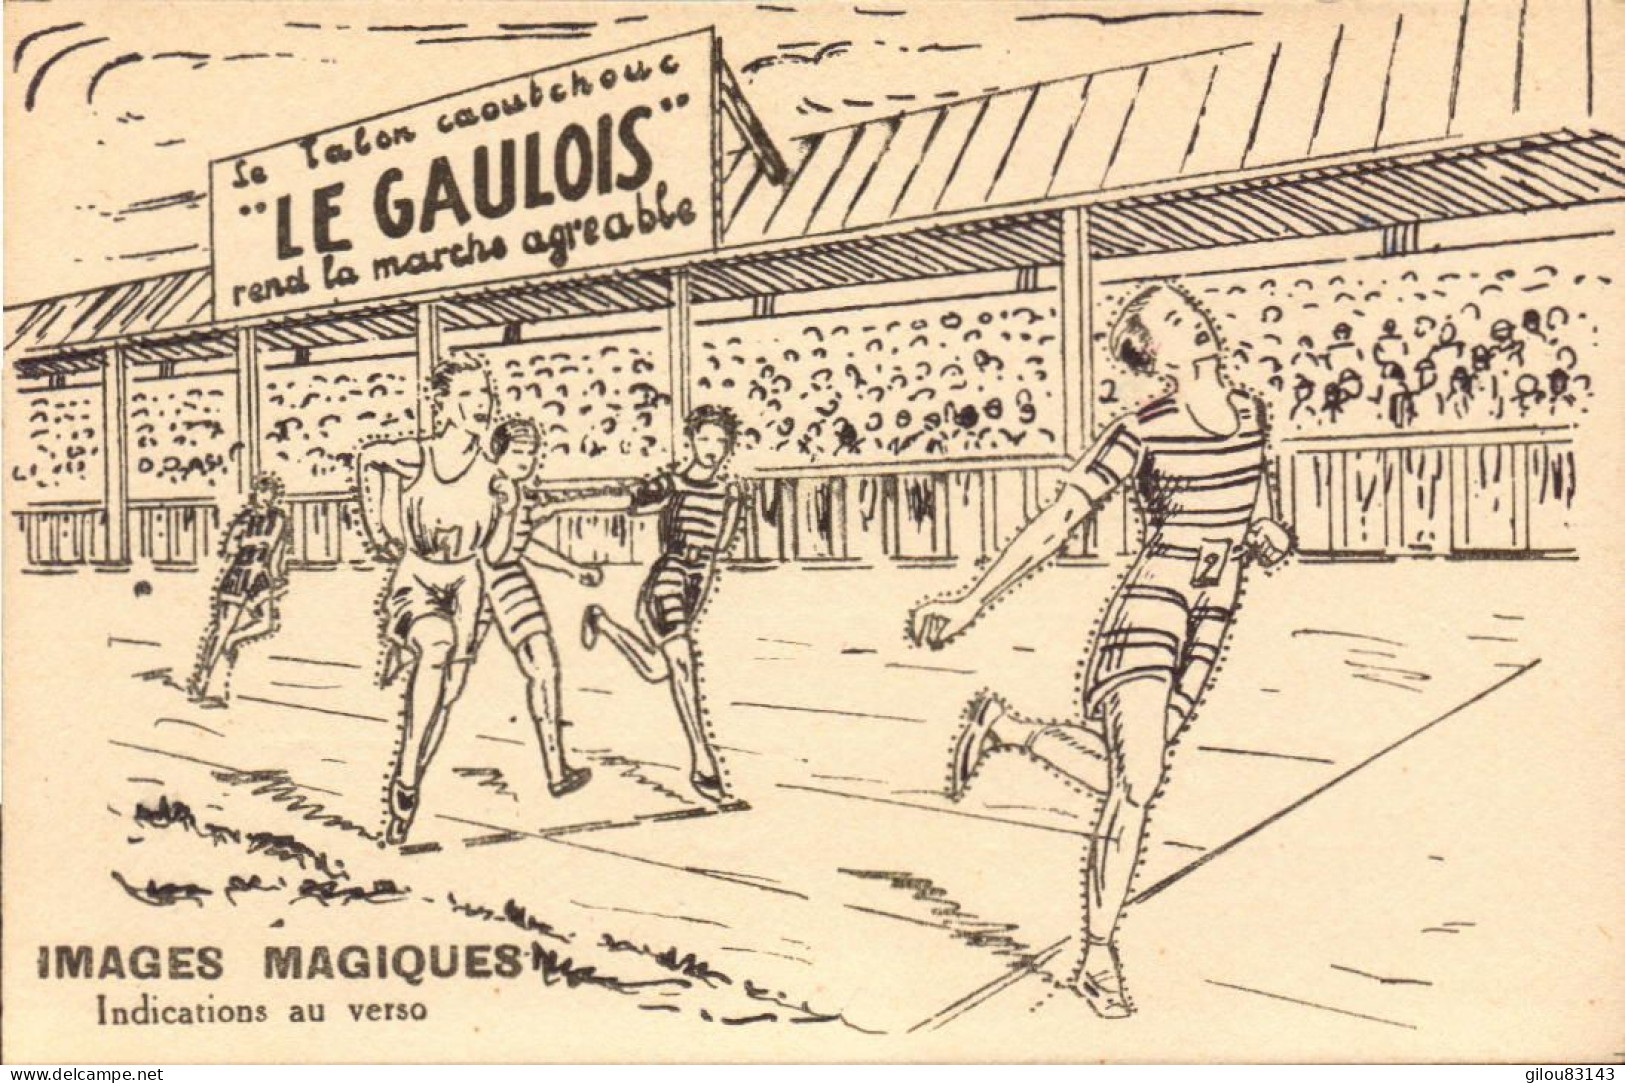 Bergougnan, Le Gaulois, Talons Caoutchouc, Illustration Sport Courses à Pied - Advertising